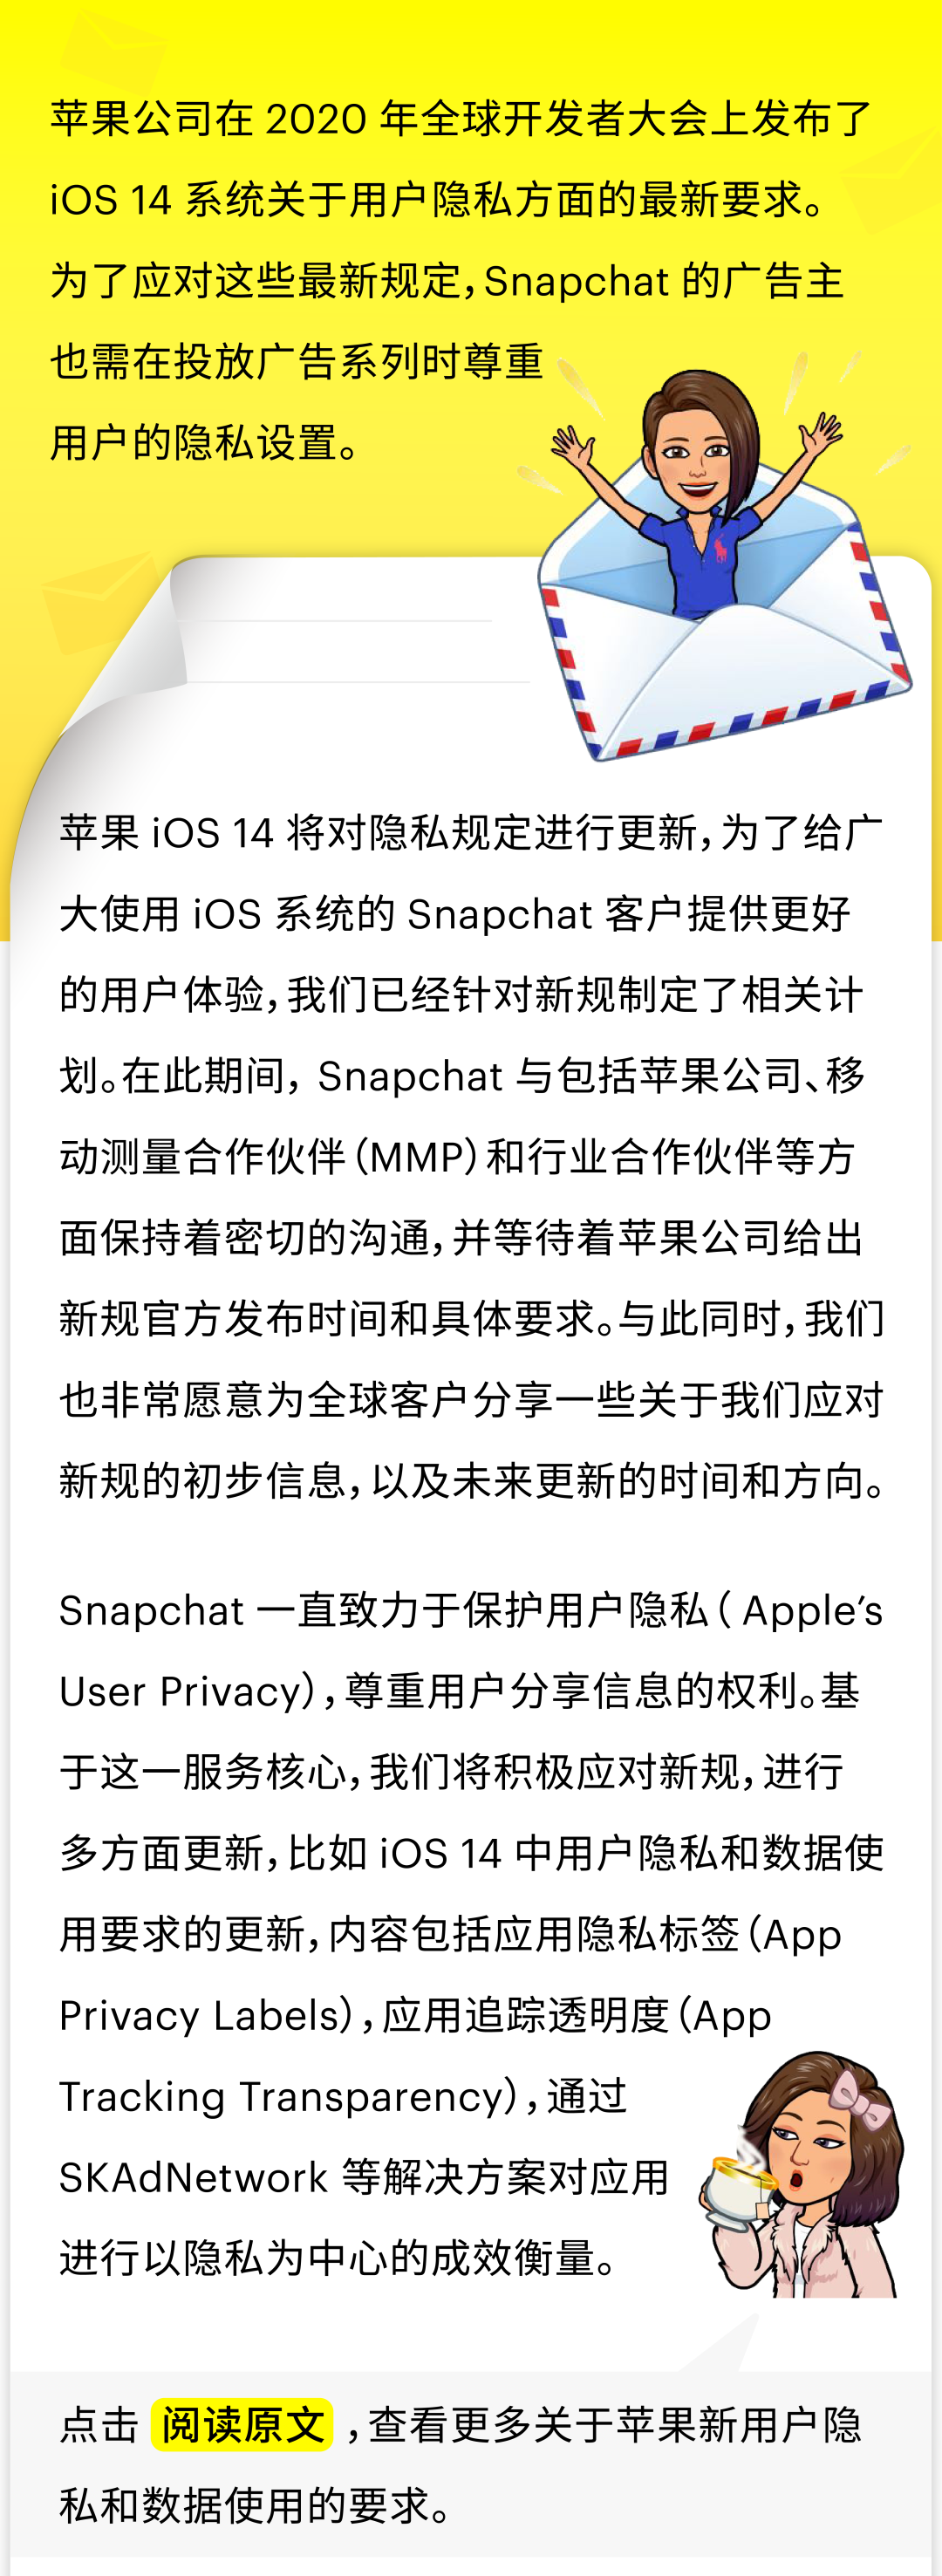 应对苹果 iOS 14 的隐私要求，Snapchat 做了哪些准备？